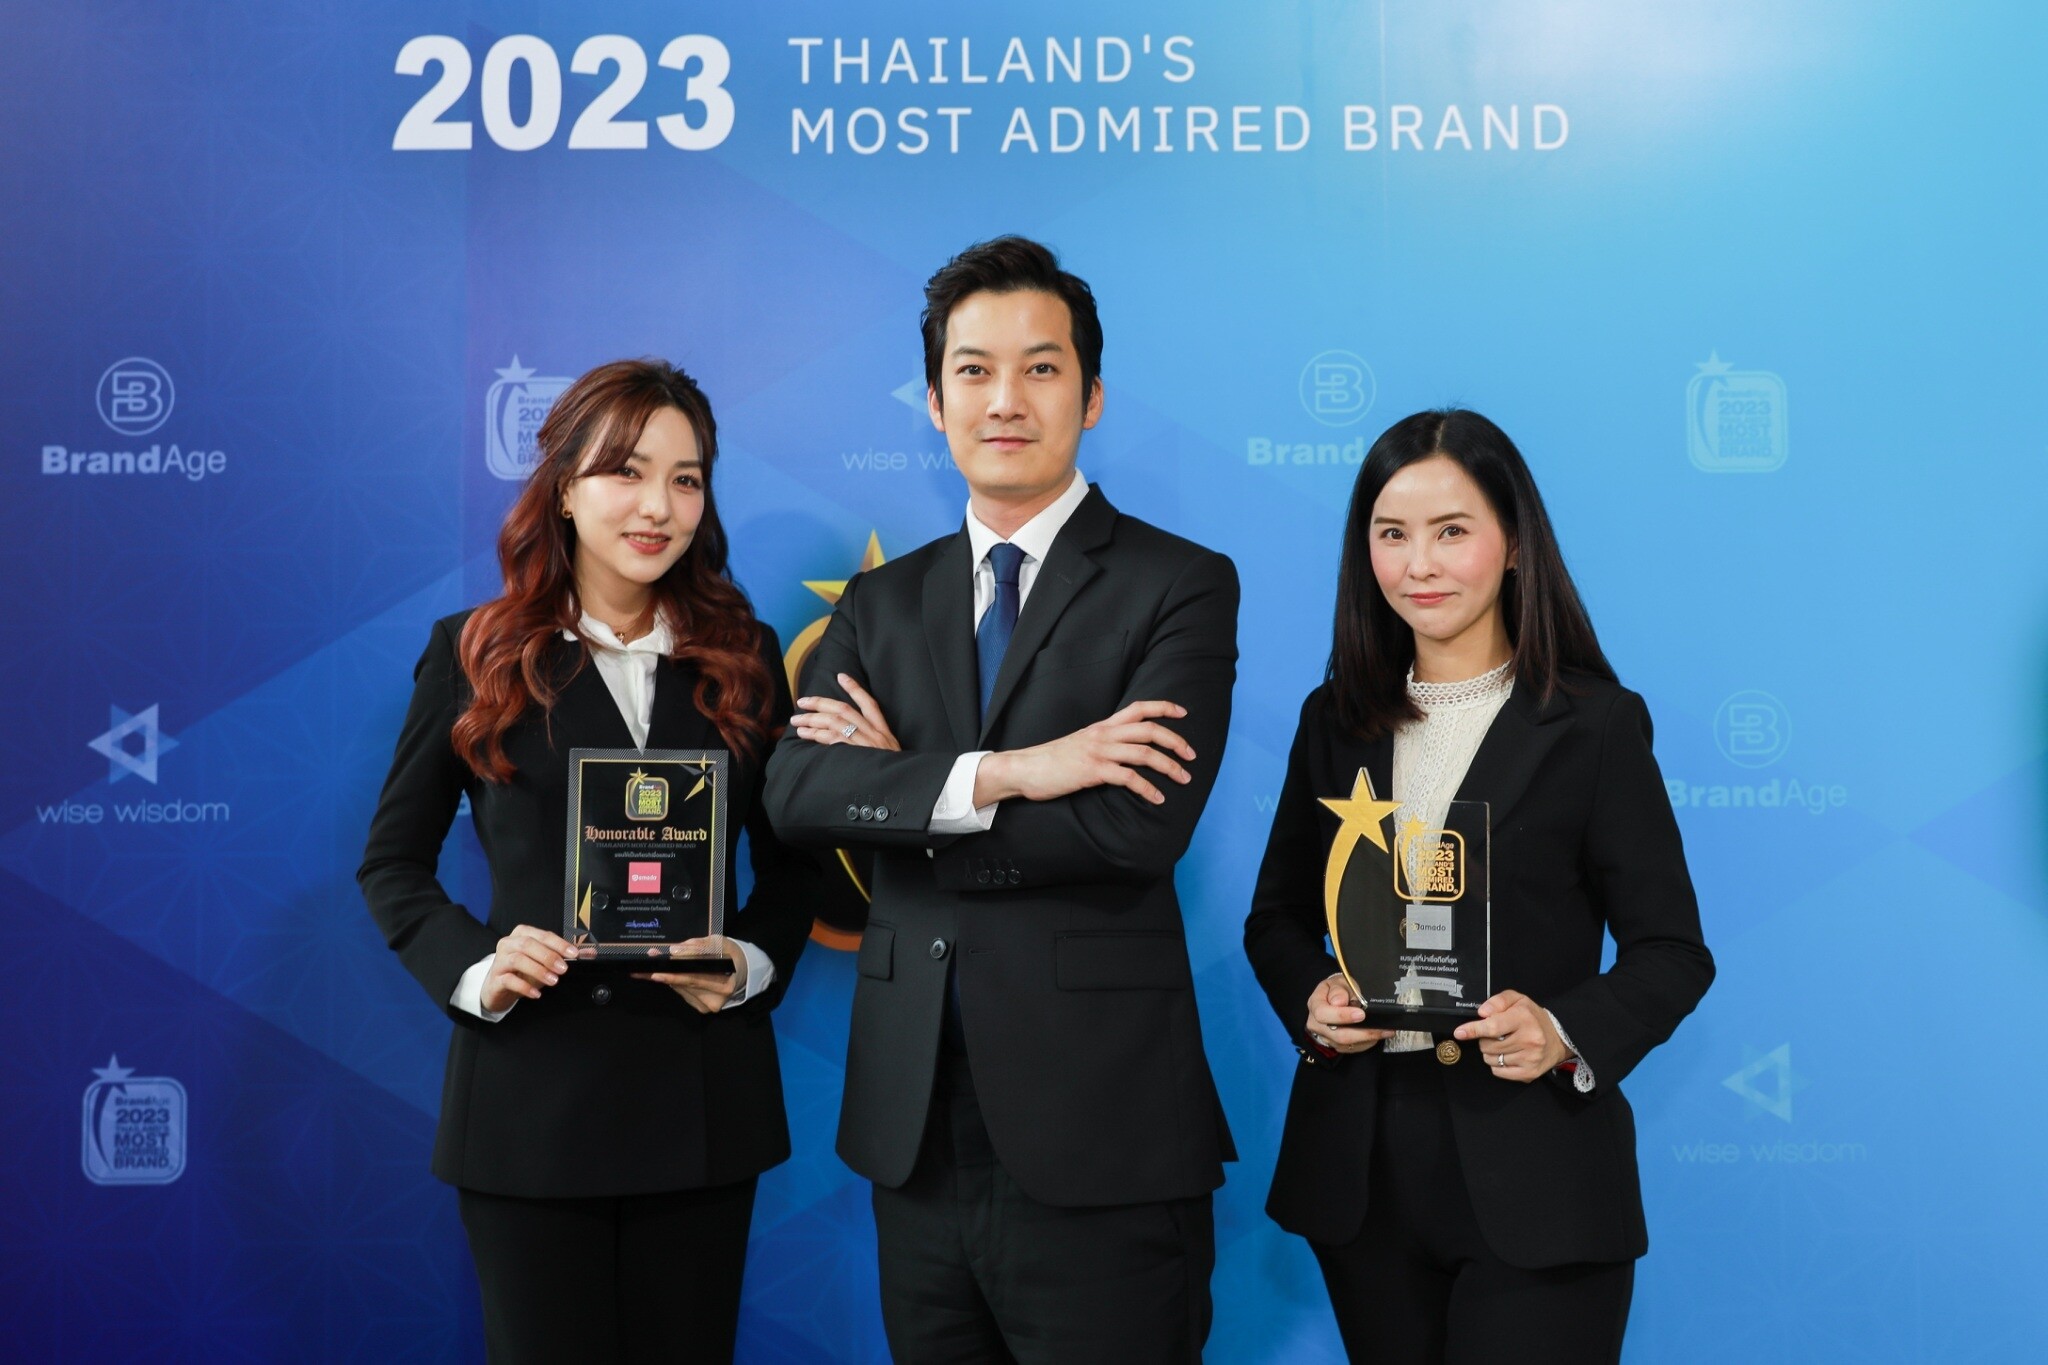 "อมาโด้" ตอกย้ำความสำเร็จคว้าอีก 2 รางวัล 2023 Thailand's Most Admired Brand แบรนด์ที่น่าเชื่อถือที่สุด และรางวัล Market Leader Brand Award